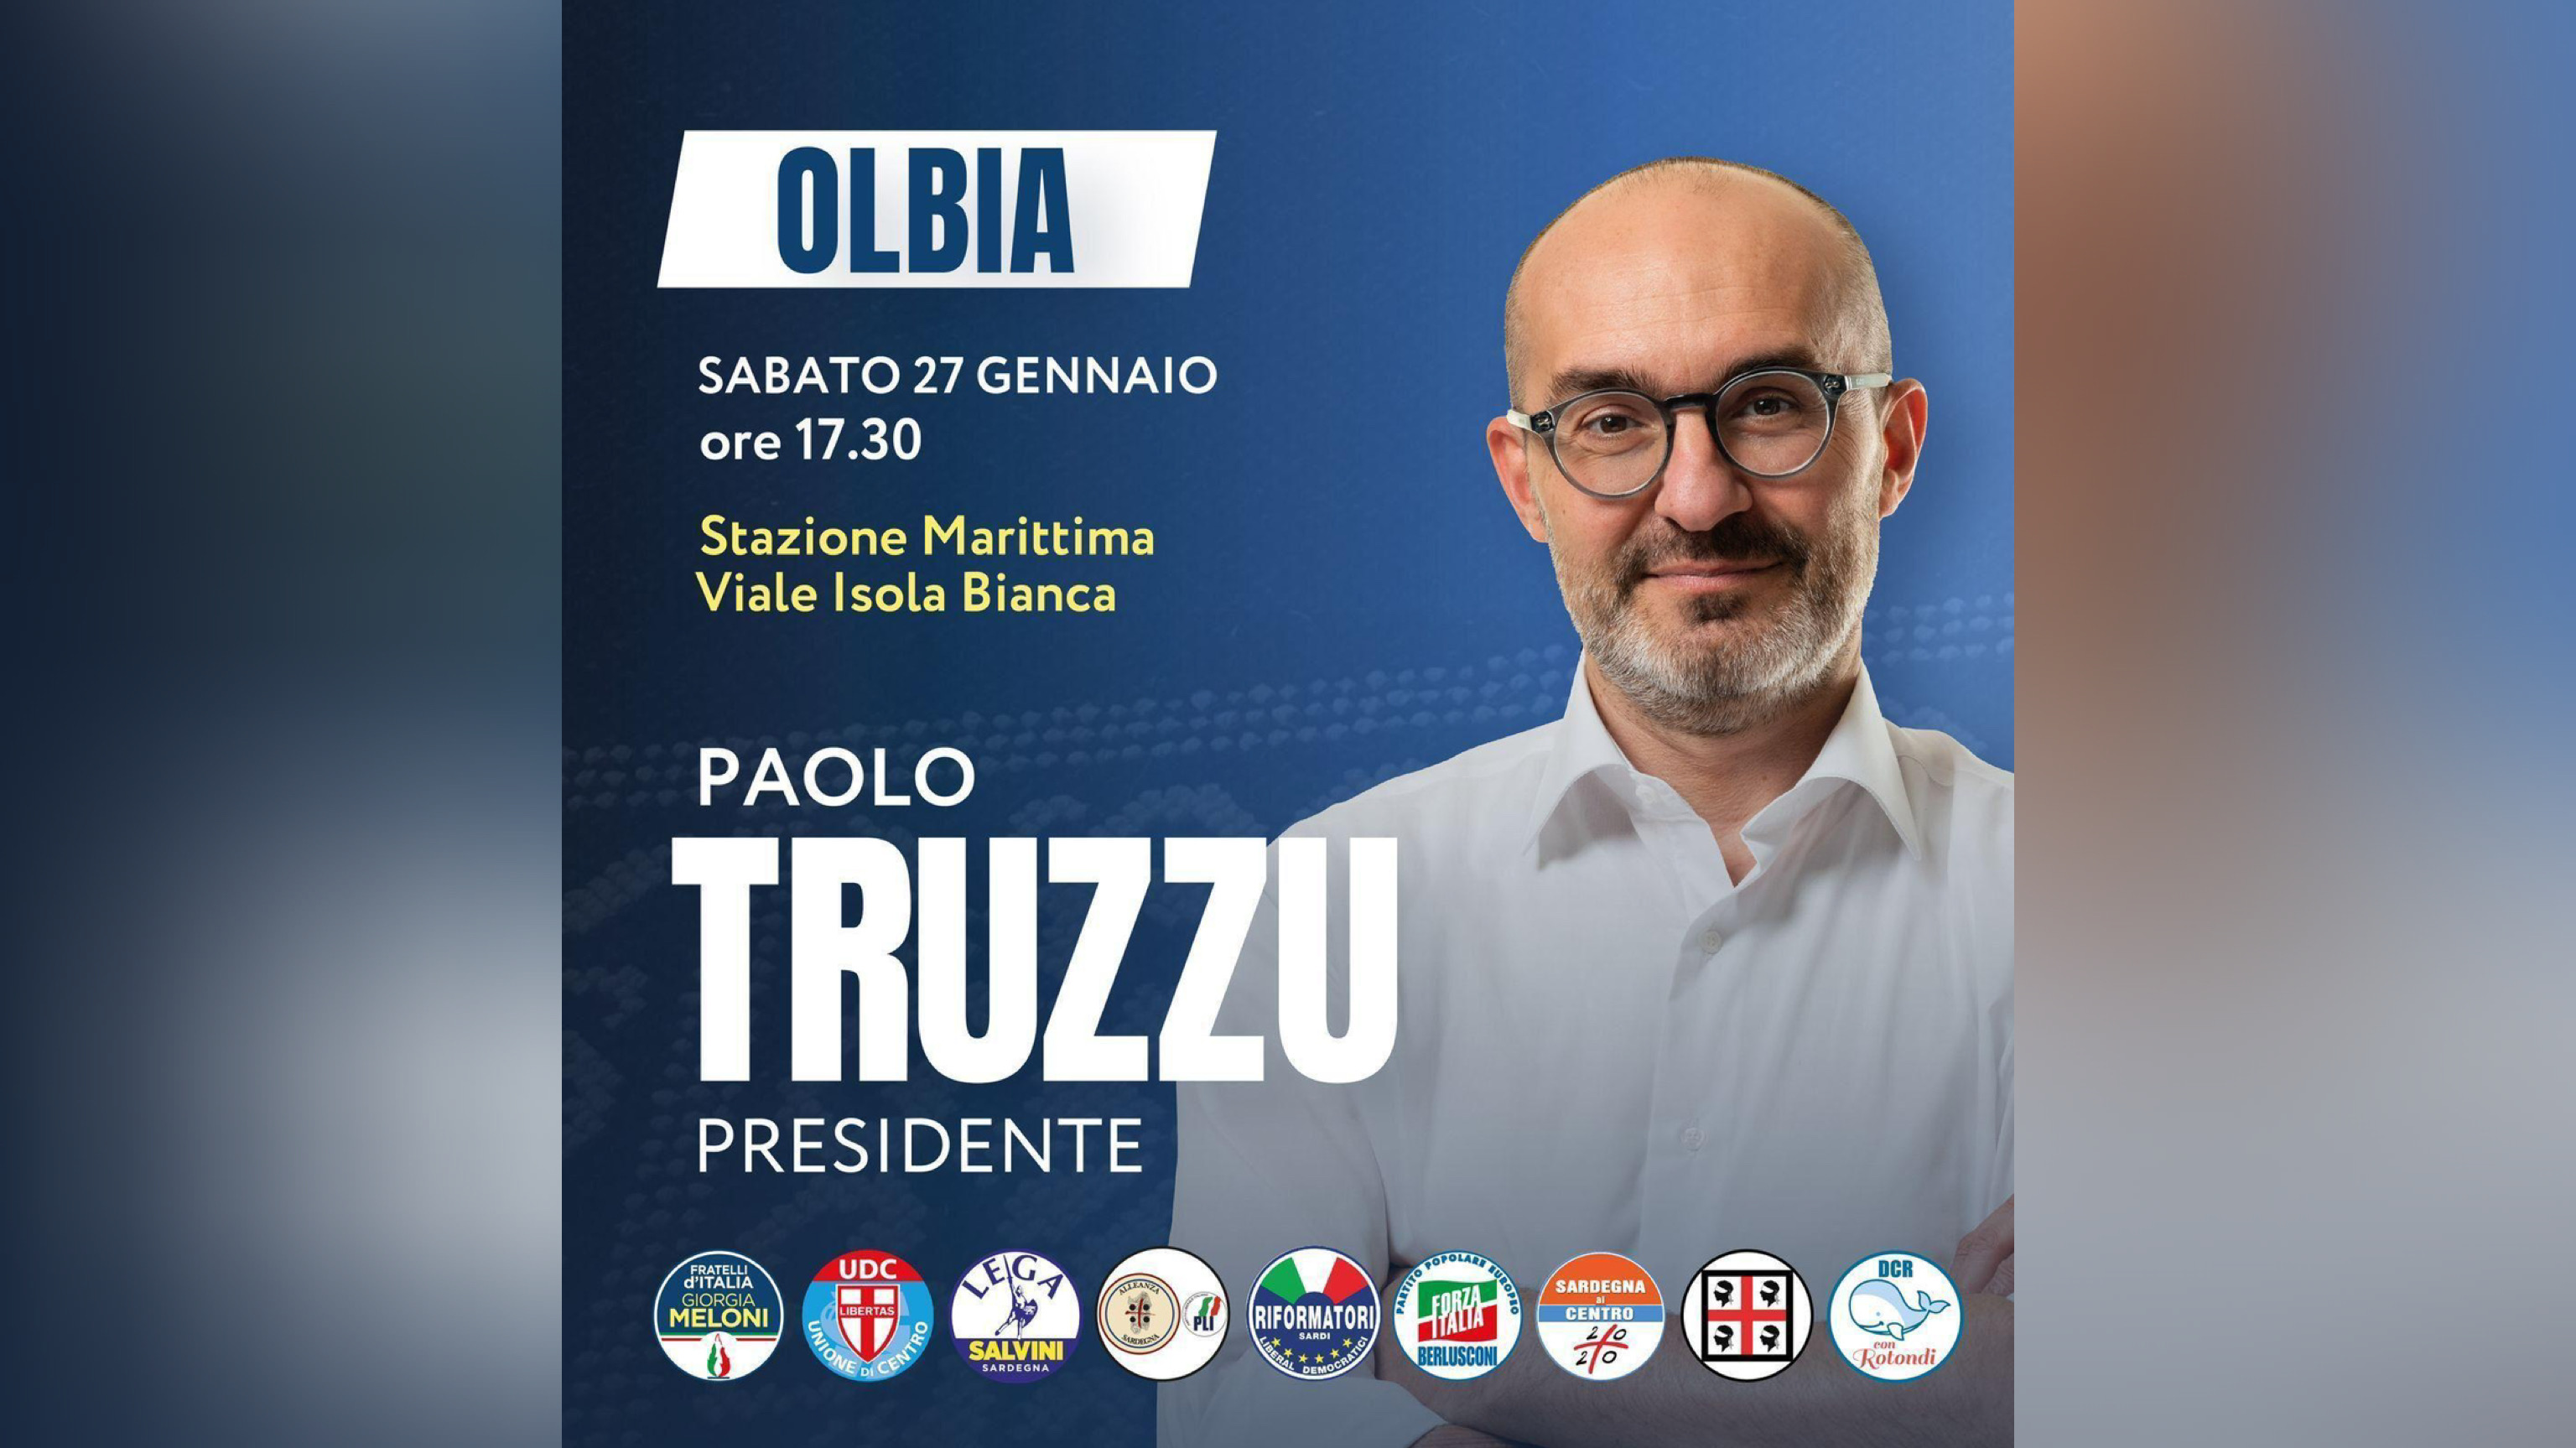 Paolo Truzzu apre la campagna elettorale per le regionali: ecco l'evento